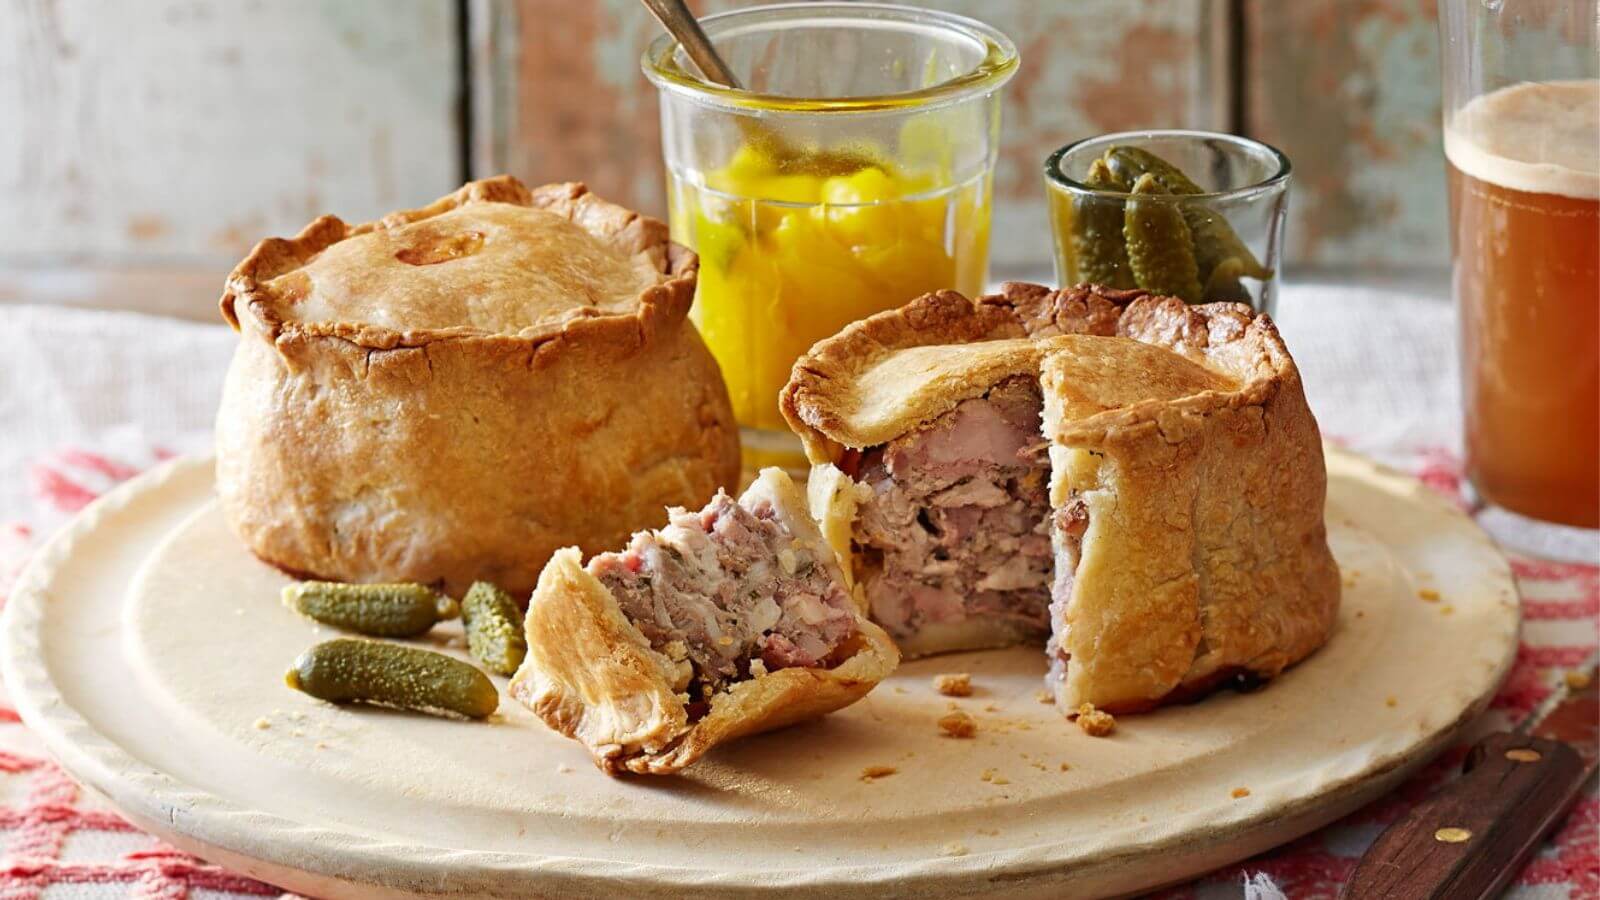 Pork pie - Món ngon truyền thống ở Anh